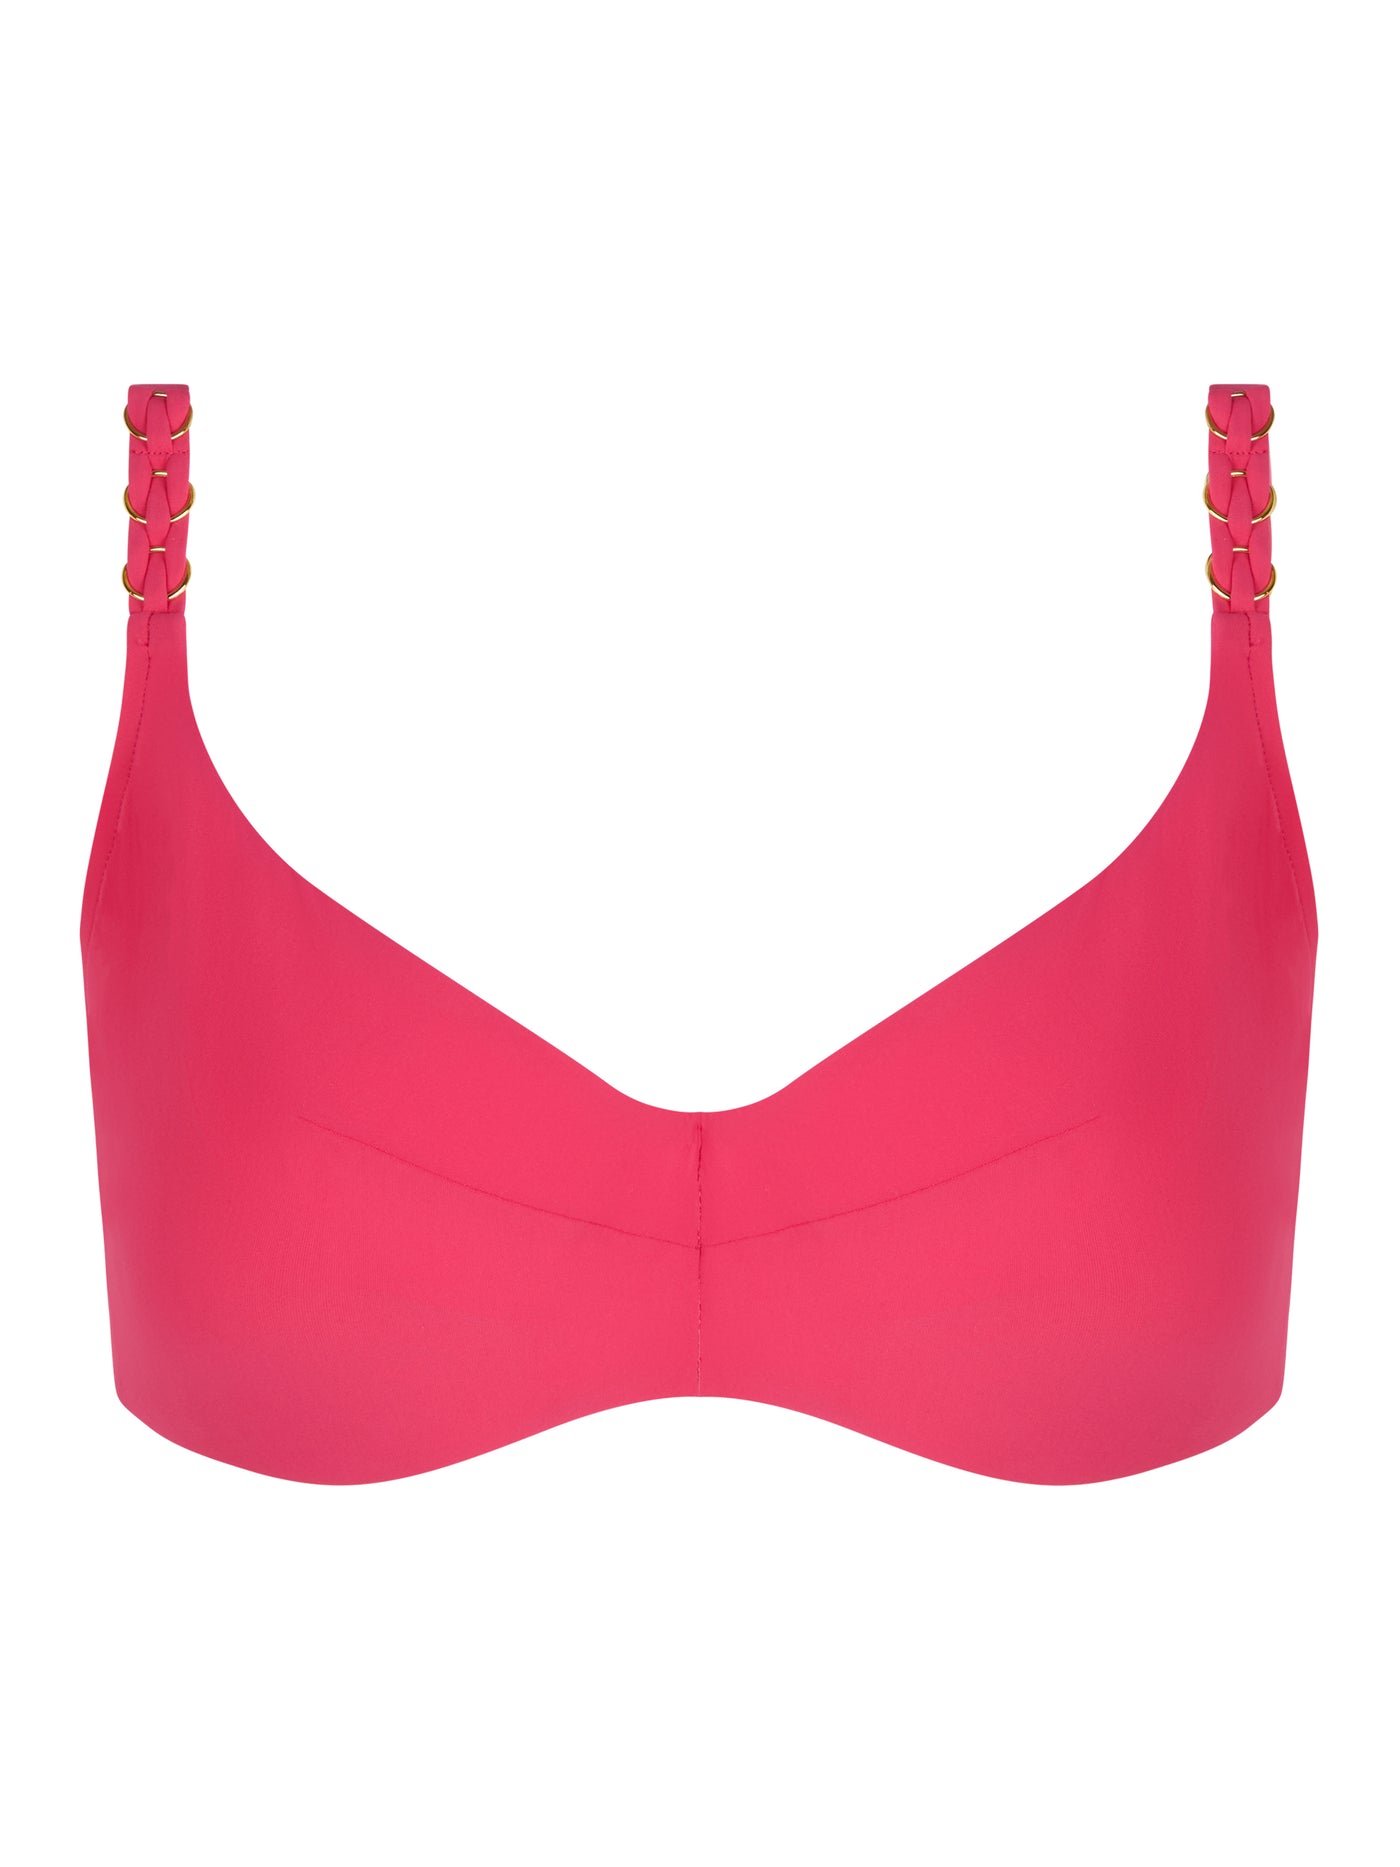 Chantelle Beachwear Emblem full cup wire bra Cybele Pink